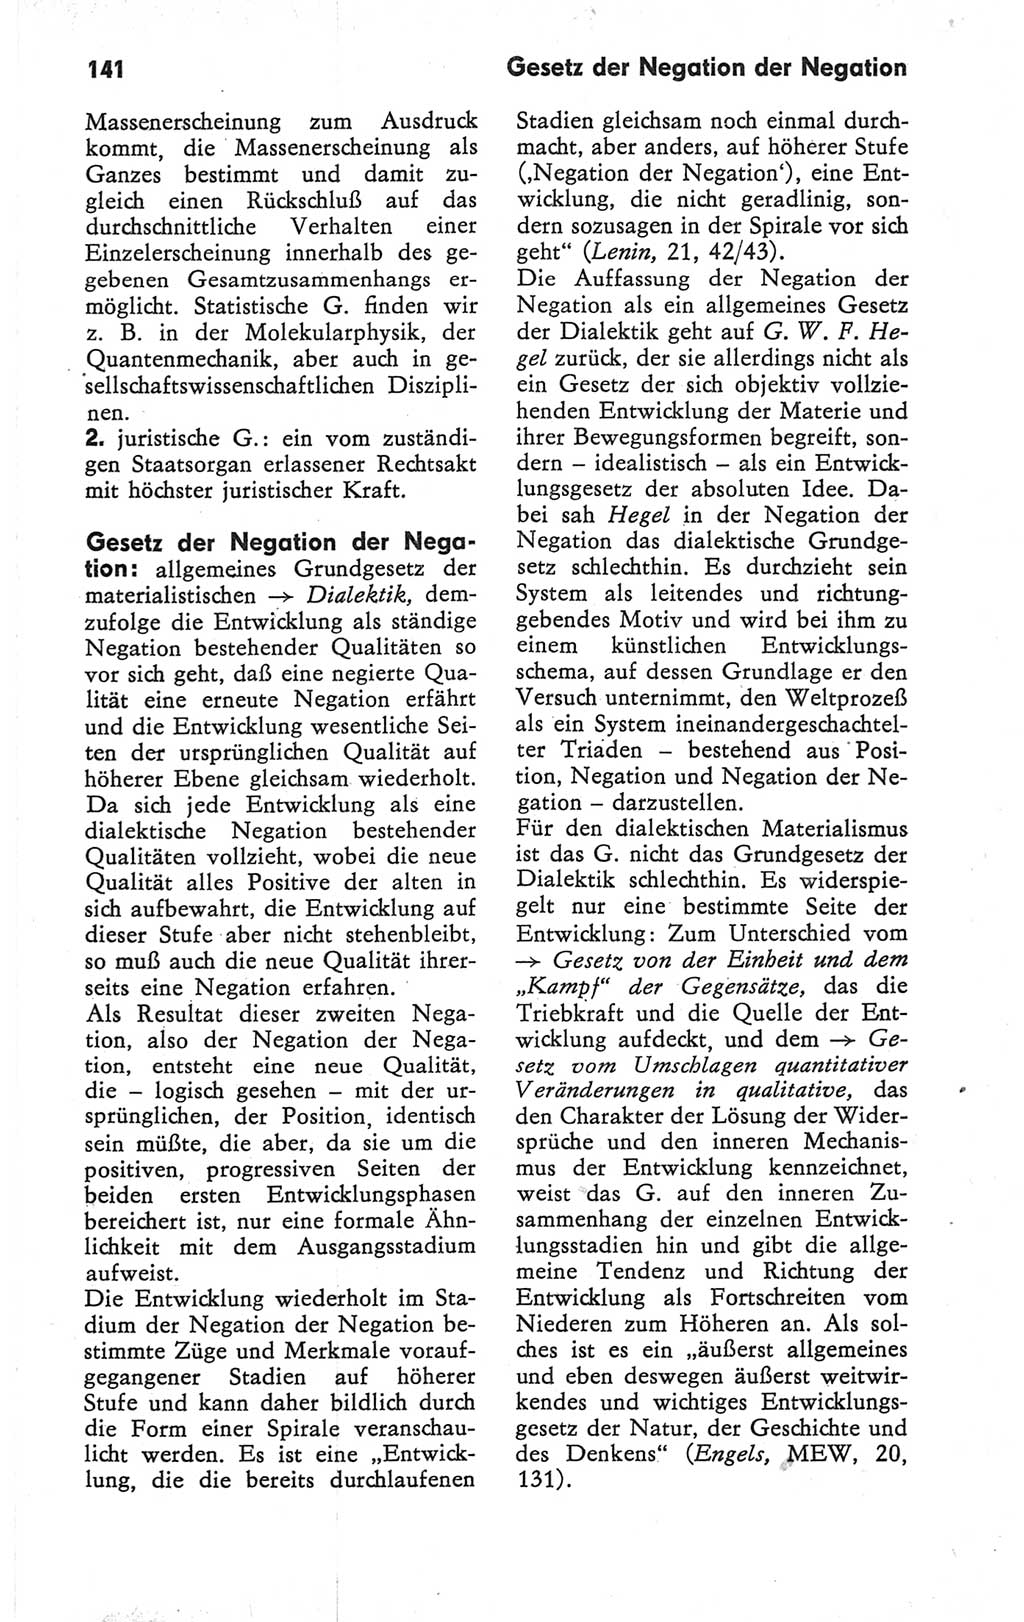 Kleines Wörterbuch der marxistisch-leninistischen Philosophie [Deutsche Demokratische Republik (DDR)] 1979, Seite 141 (Kl. Wb. ML Phil. DDR 1979, S. 141)